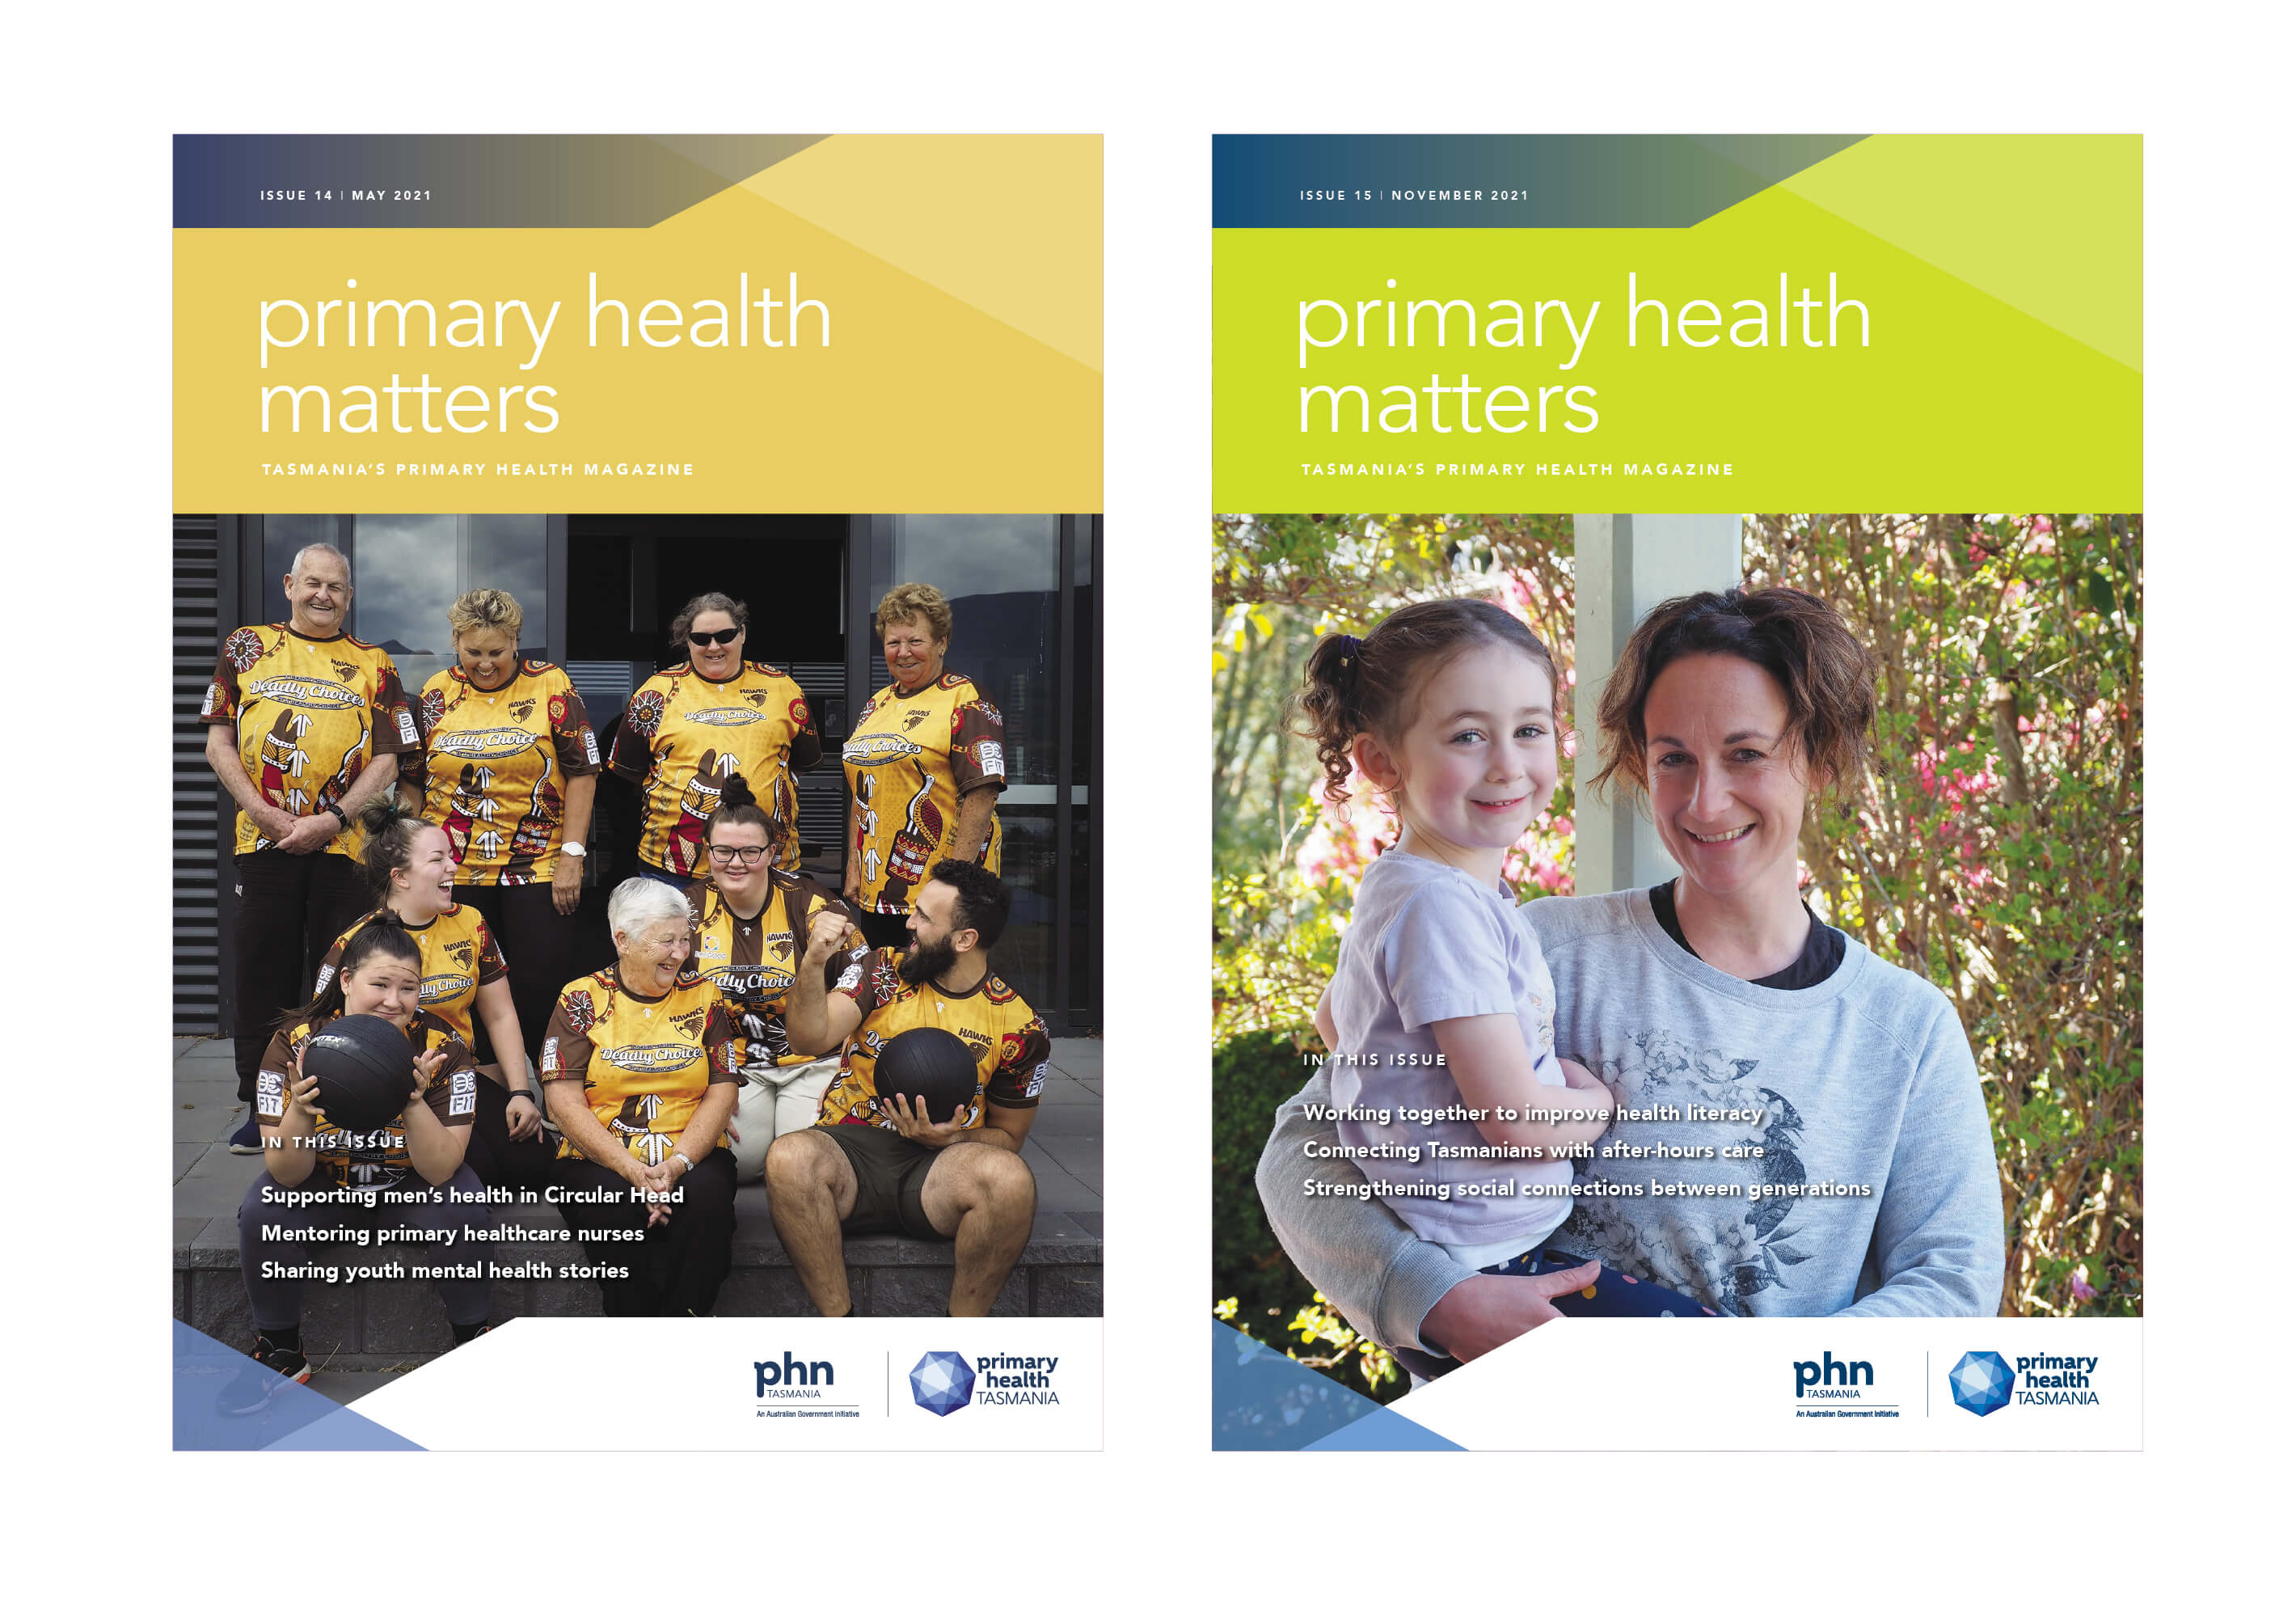 Primary Health Tasmania